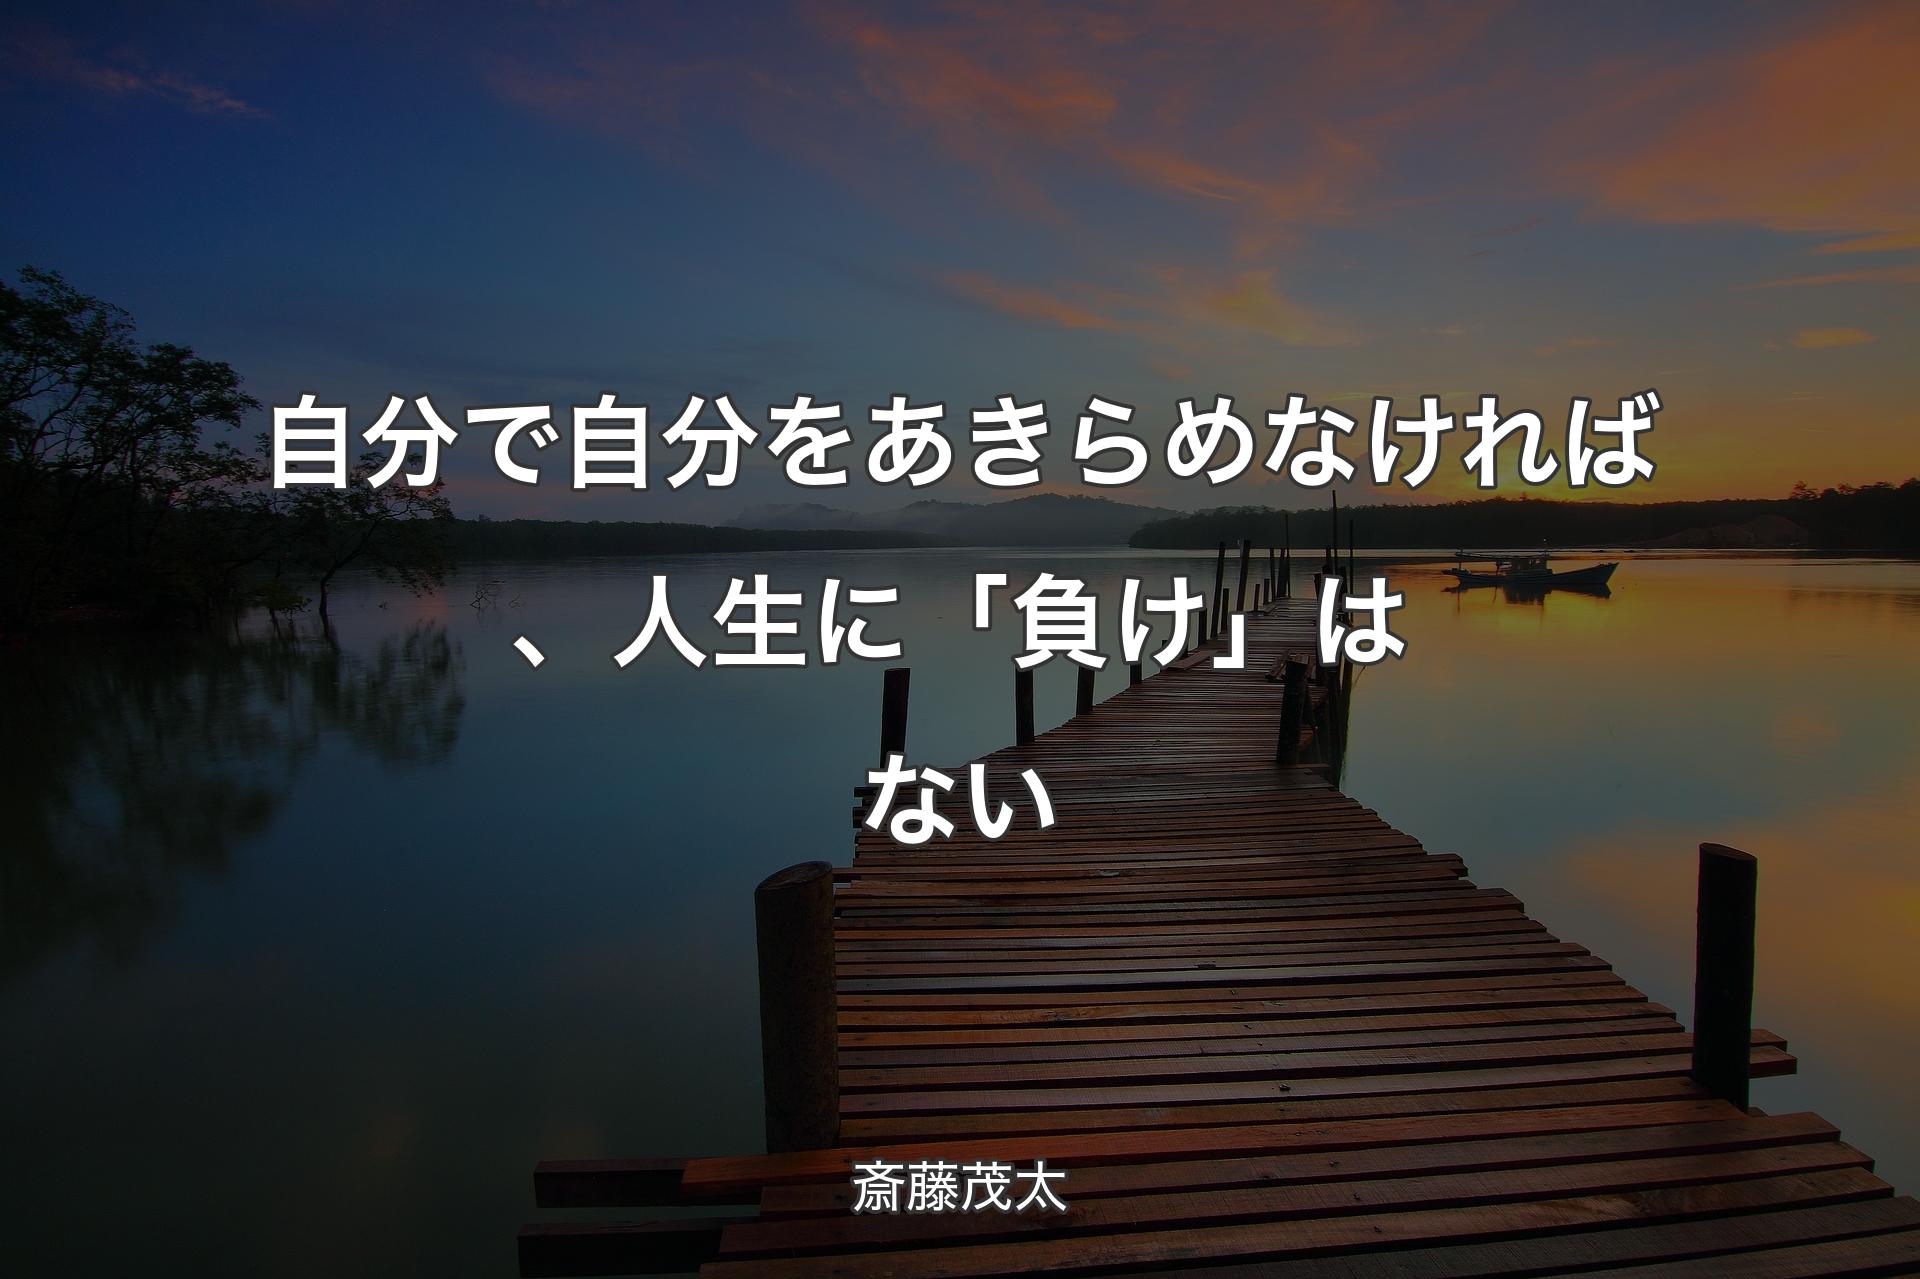 自分で自分をあきらめなければ、人生に「負け」はない - 斎藤茂太